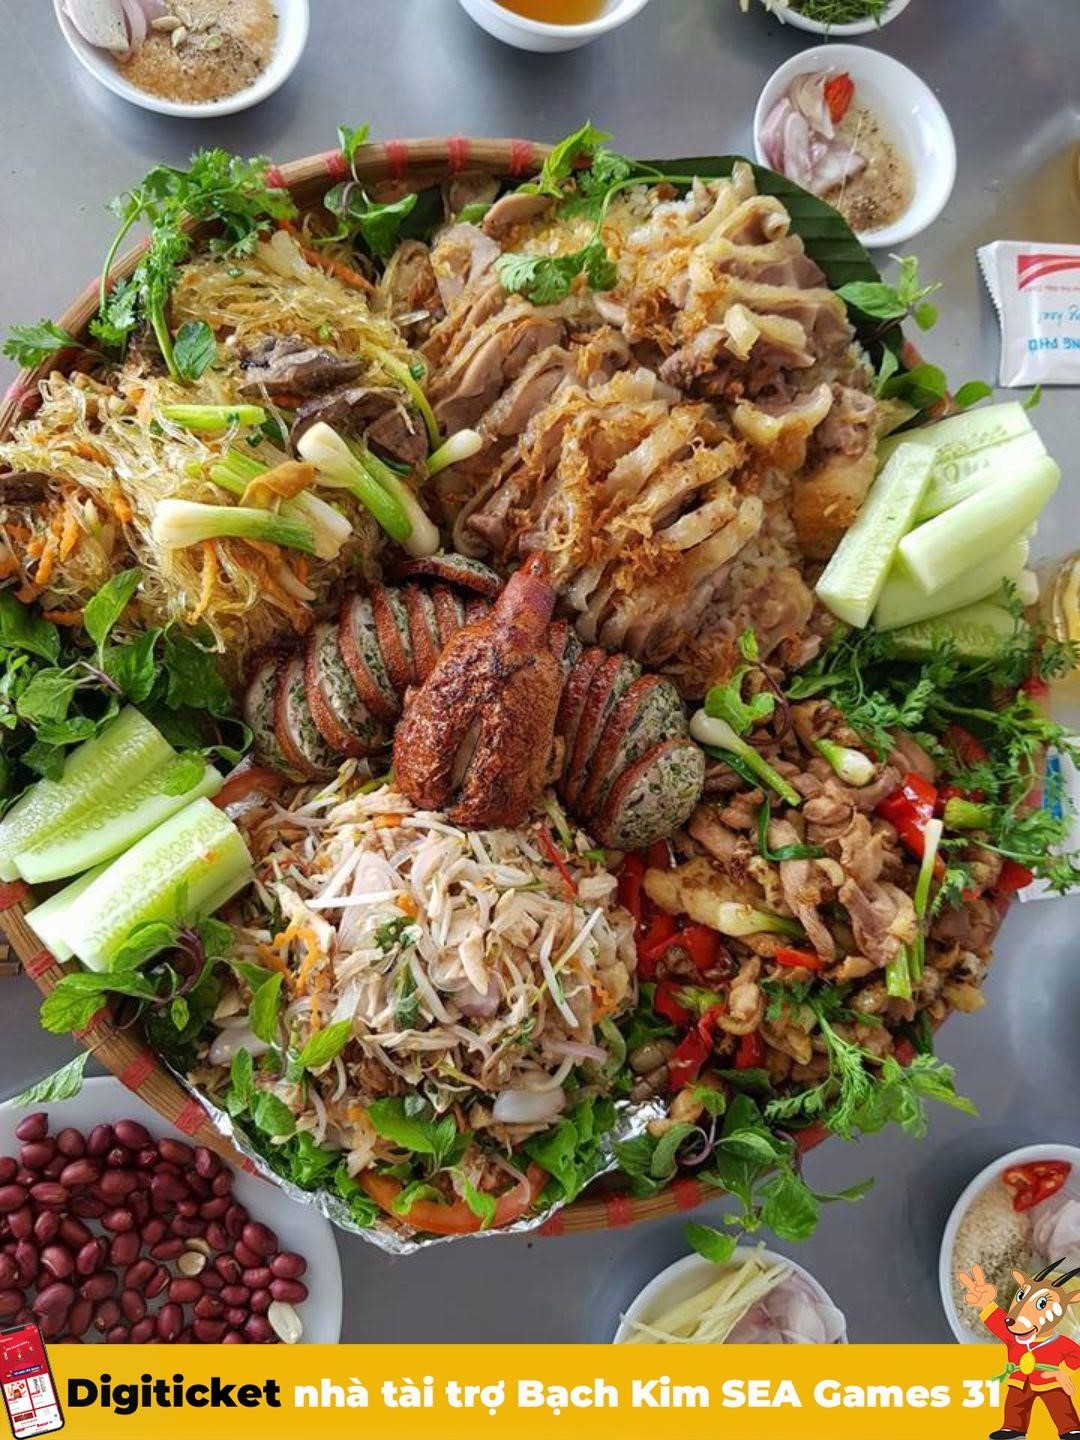 Nhà hàng Hồng Phú nằm ở trung tâm thành phố, là một điểm đến lý tưởng cho những người yêu thích ẩm thực truyền thống Việt Nam. Với không gian thoáng đãng và menu đa dạng, nhà hàng Hồng Phú hứa hẹn mang đến cho bạn những trải nghiệm ẩm thực tuyệt vời.